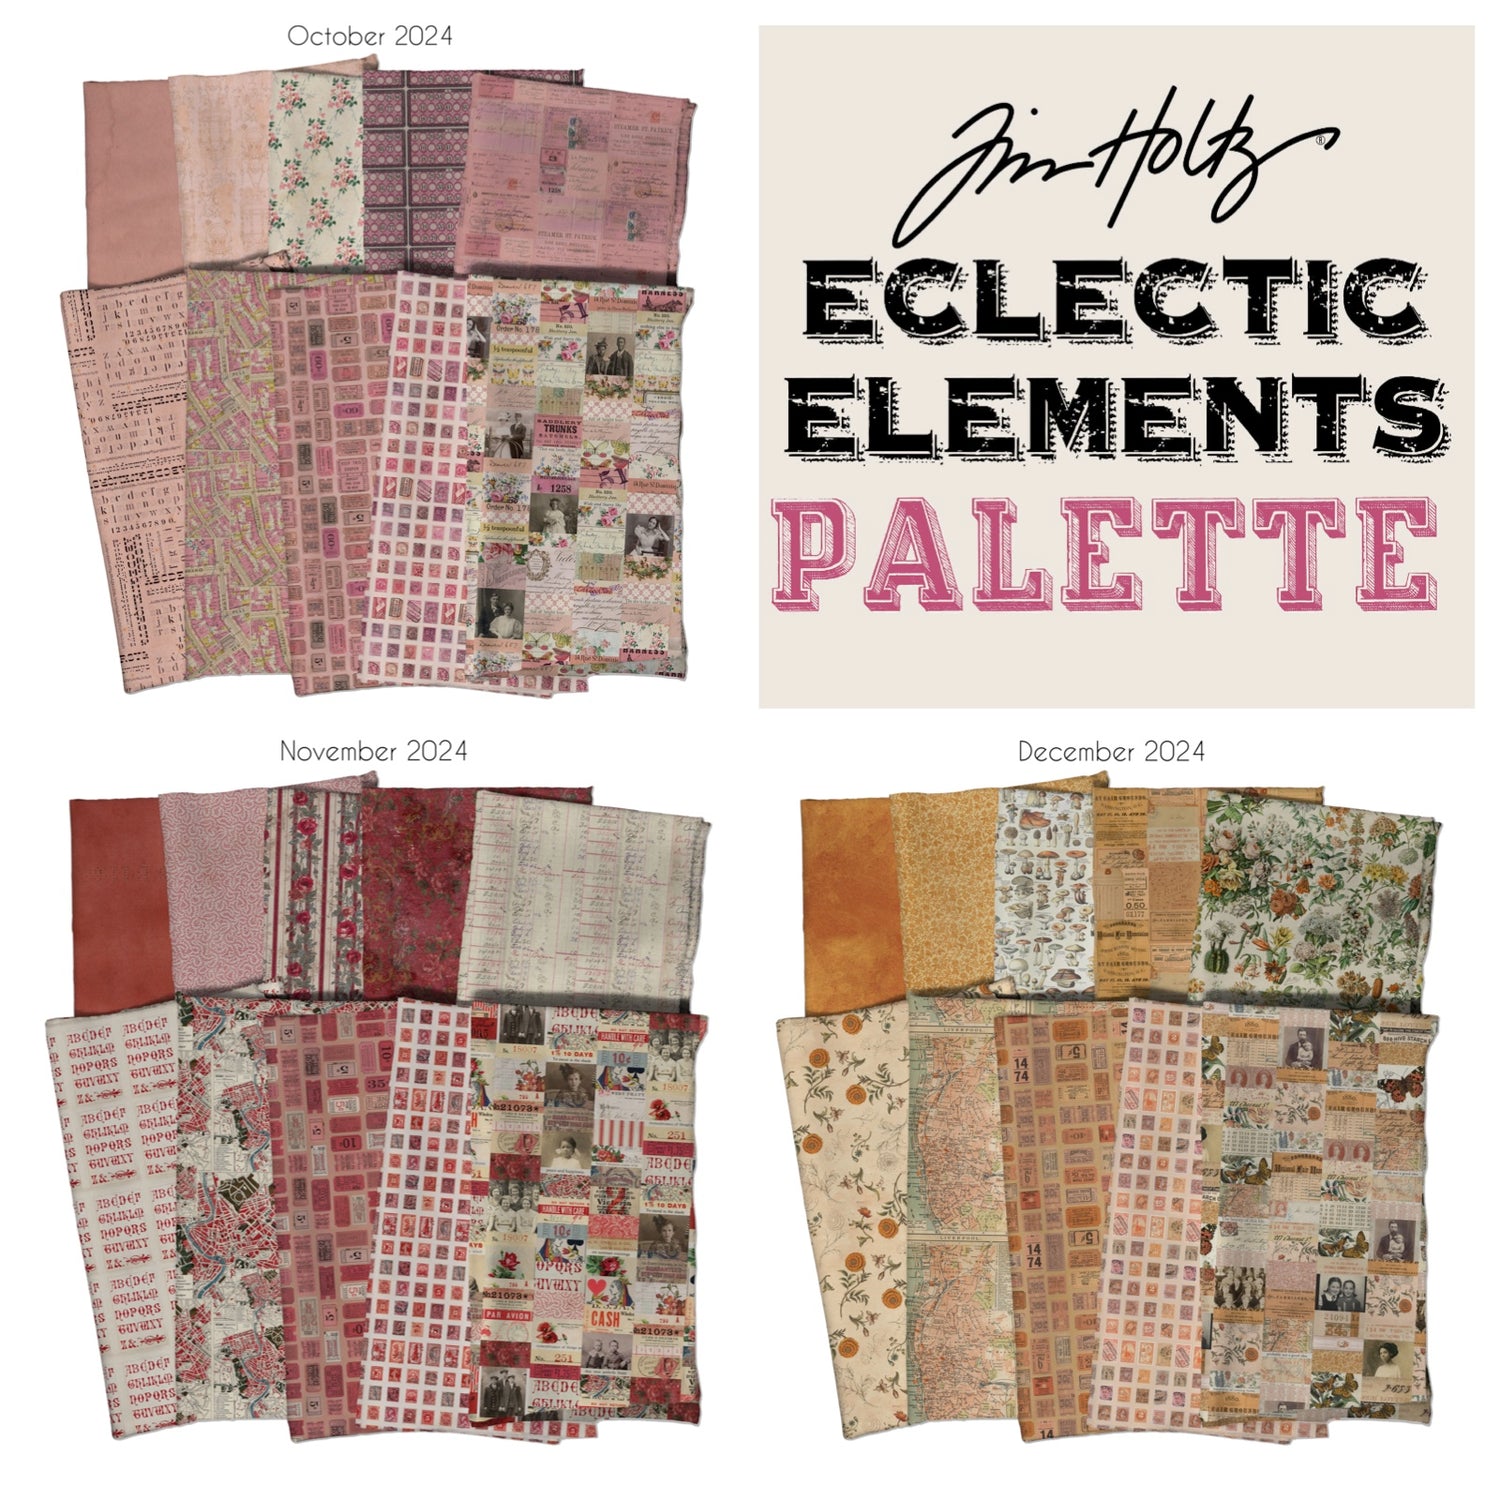 Tim Holtz Eclectic Element Palette Subscription Program